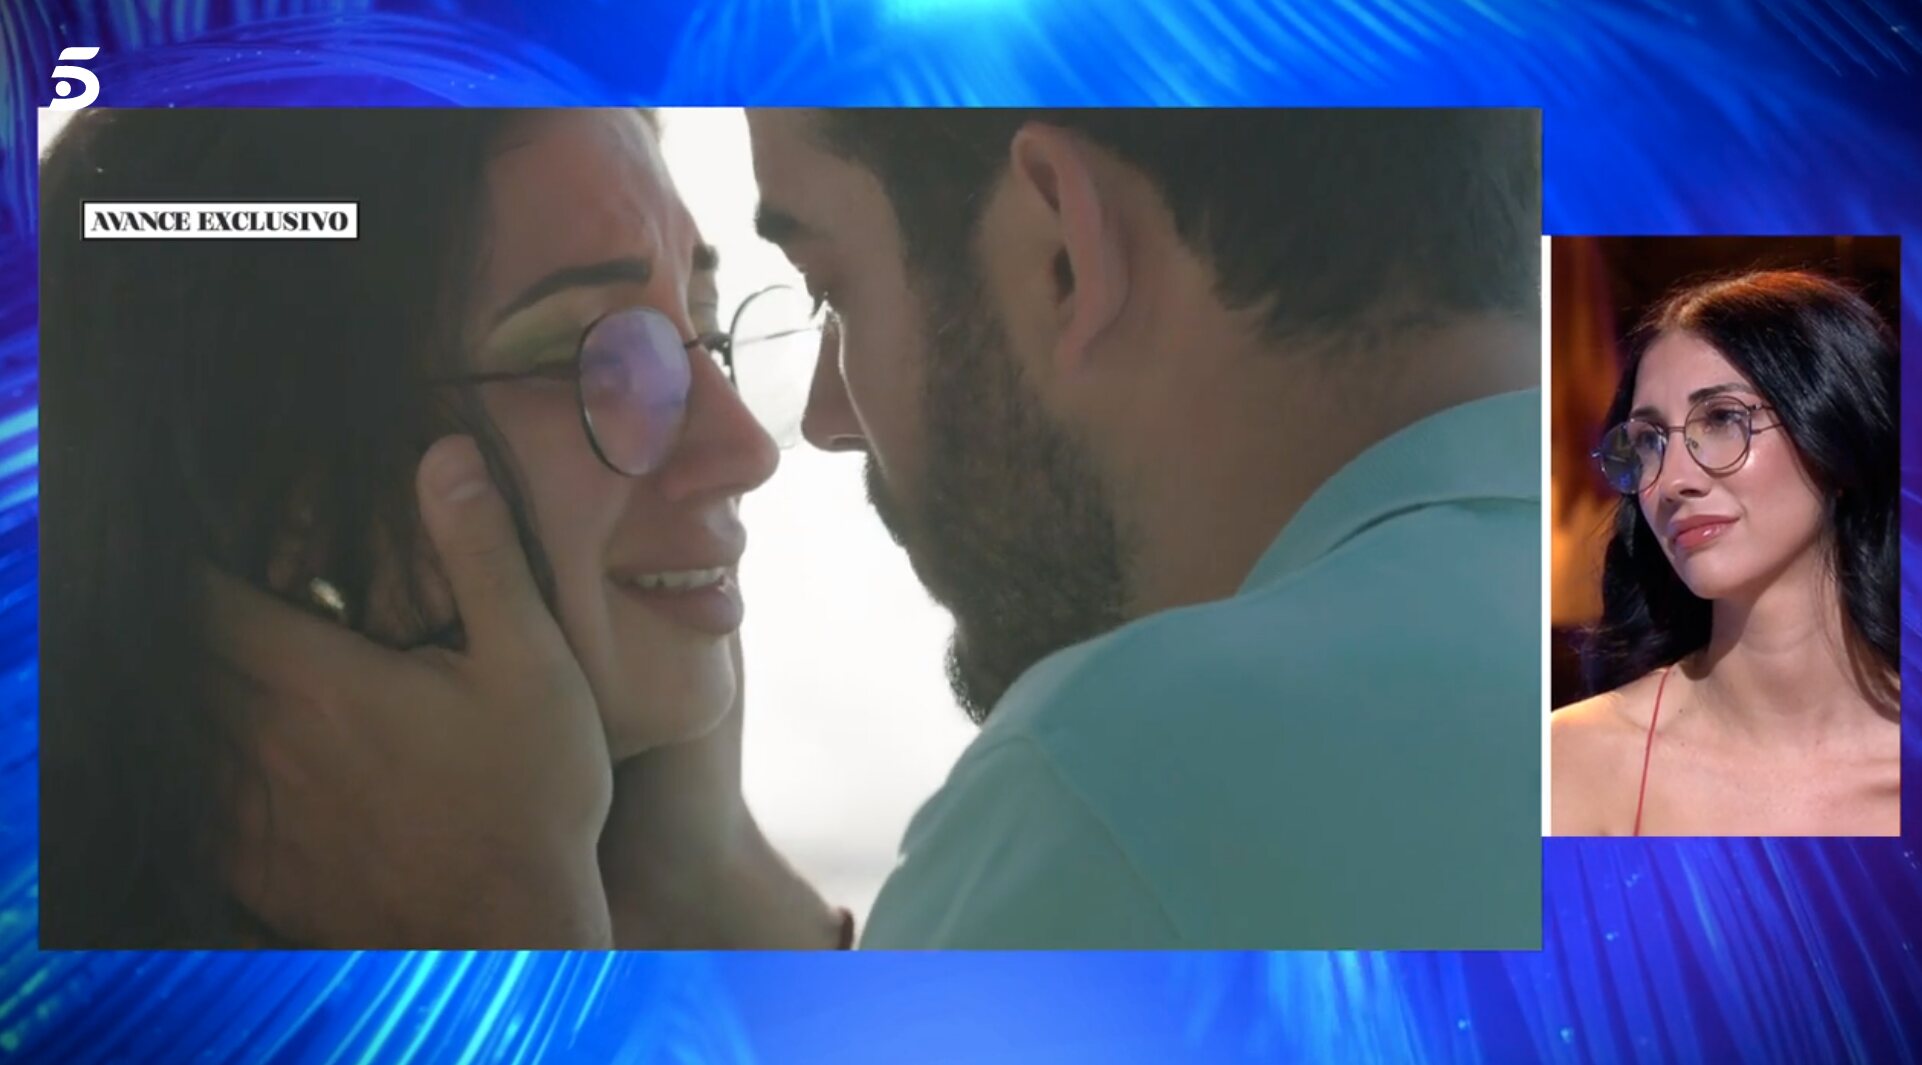 Avance exclusivo de la despedida de Adrián y Naomi en 'La isla de las tentaciones 6' | foto: Telecinco.es